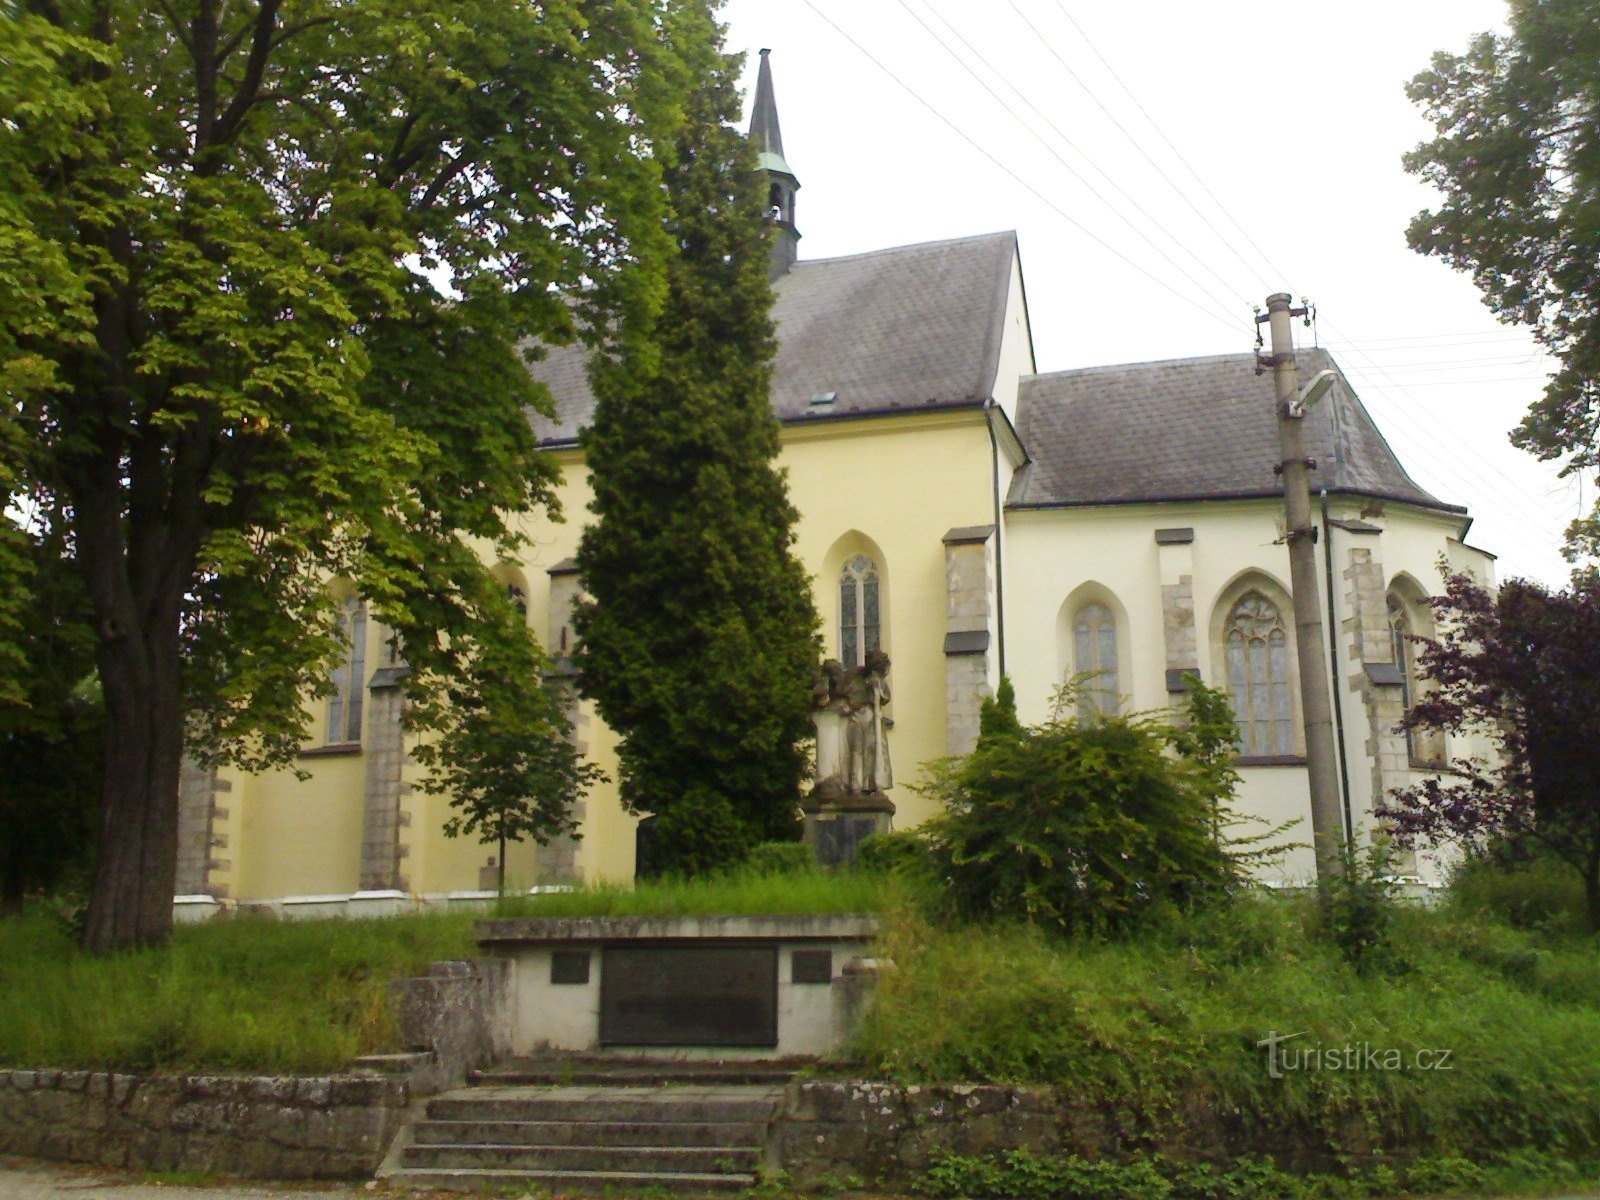 Rovensko pod Troskami - Chiesa di S. Venceslao